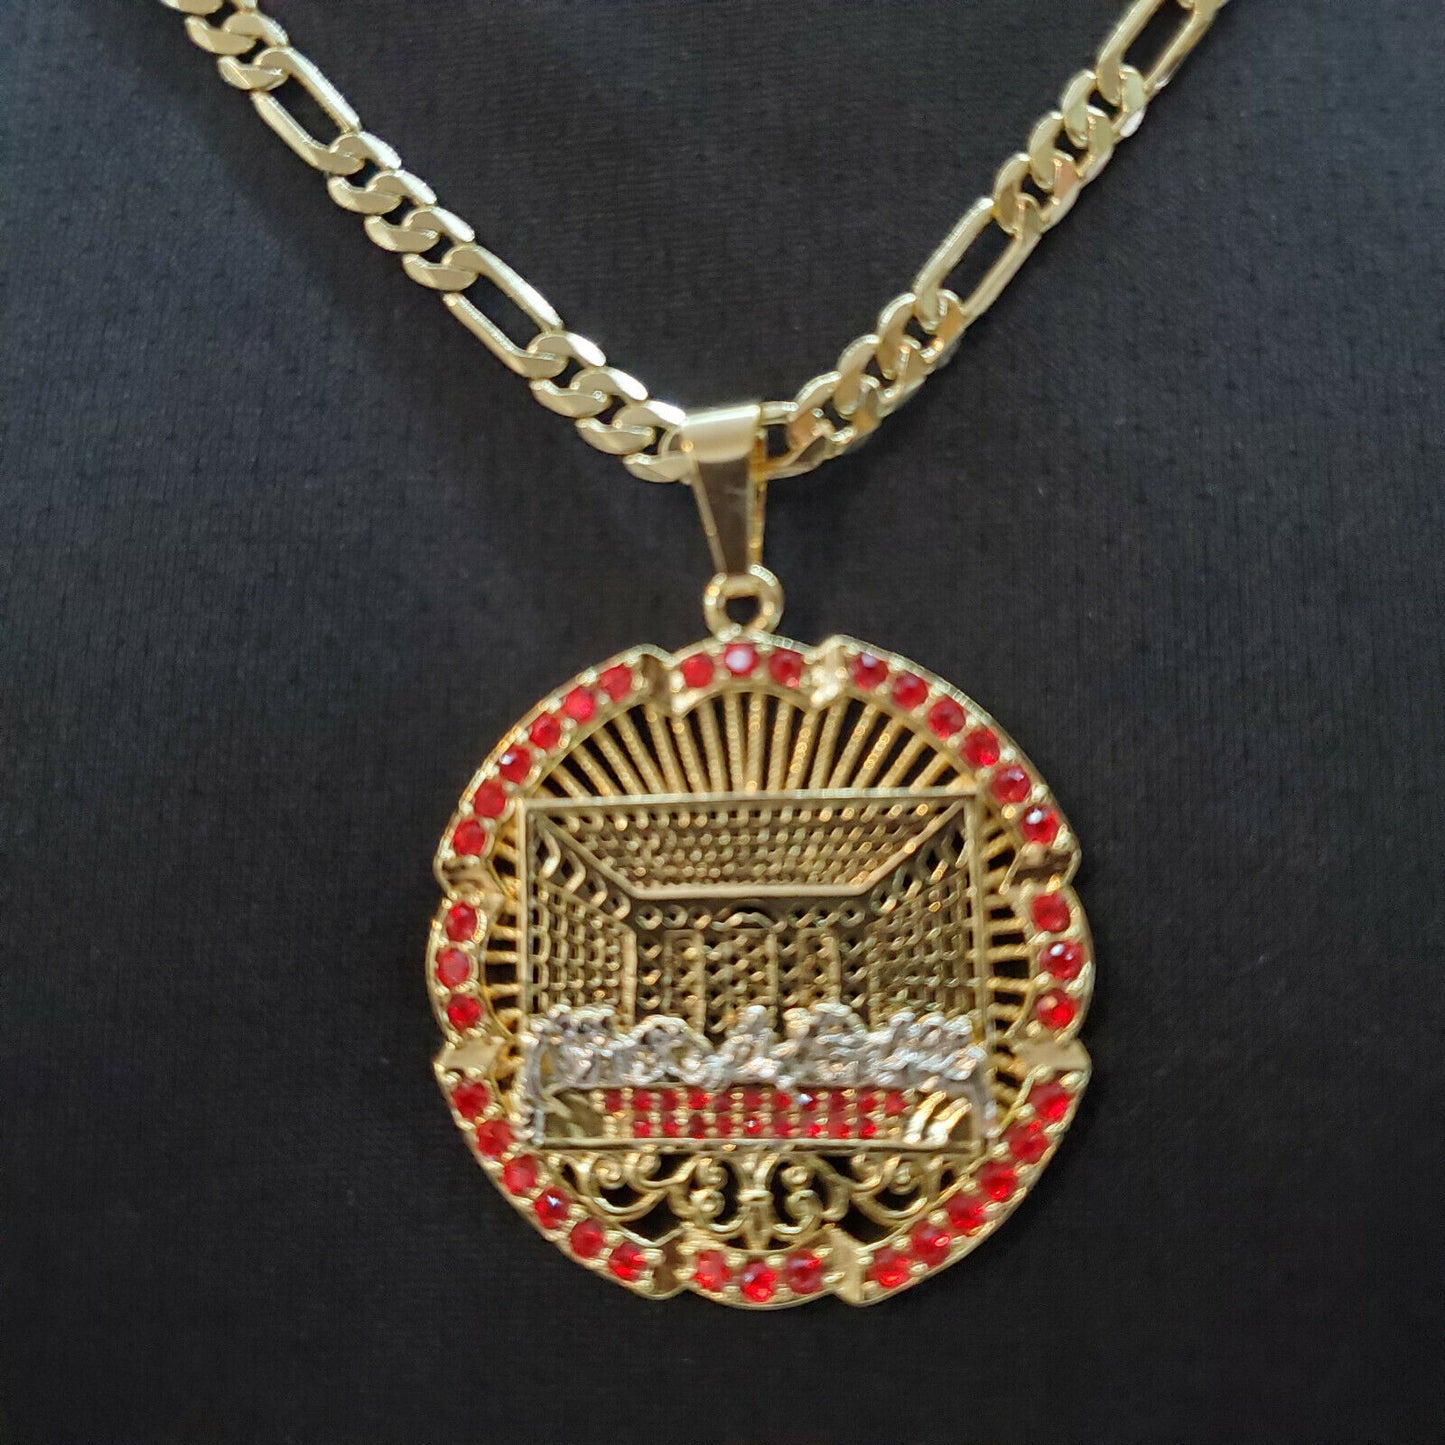 Necklaces - 14K Gold Plated. Last Supper Pendant & Chain. La Ultima Cena.